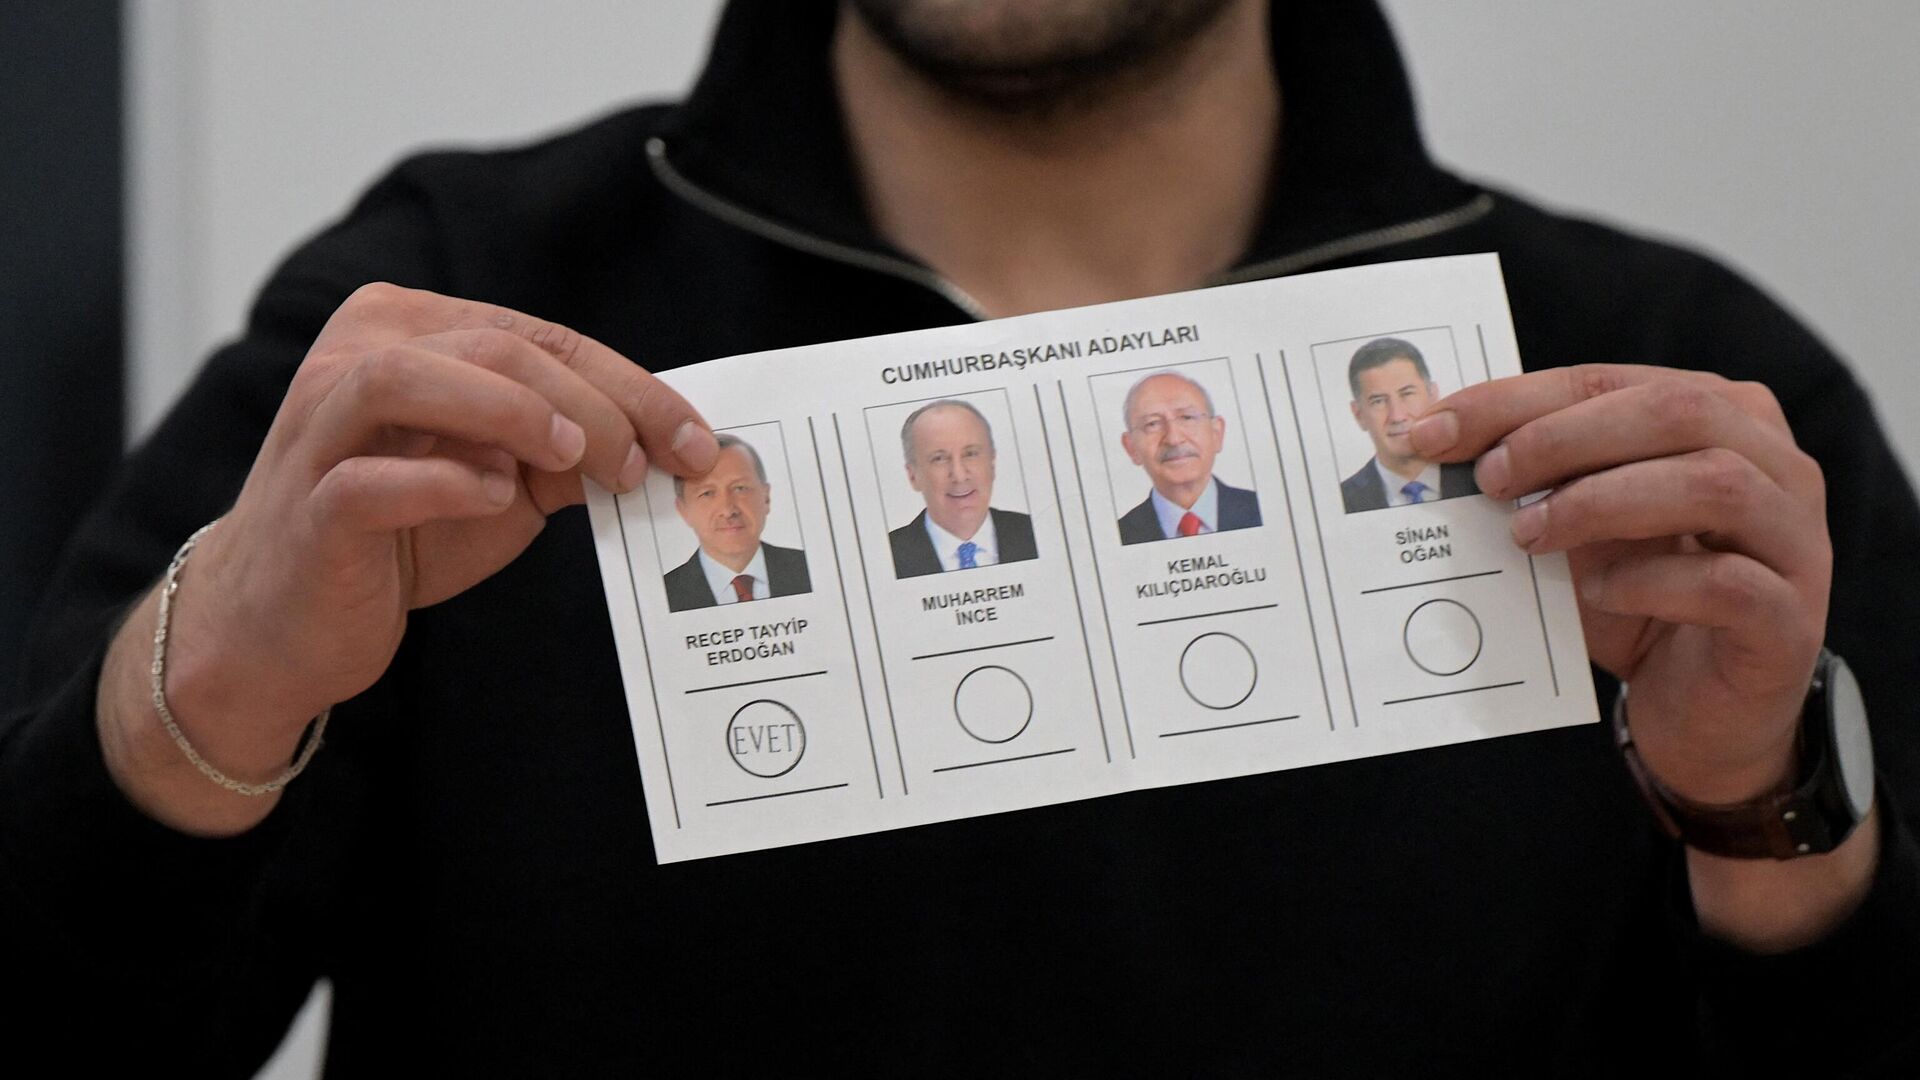 Бюллетень с голосом за Реджепа Тайипа Эрдогана на избирательном участке в Стамбуле - Sputnik Кыргызстан, 1920, 14.05.2023